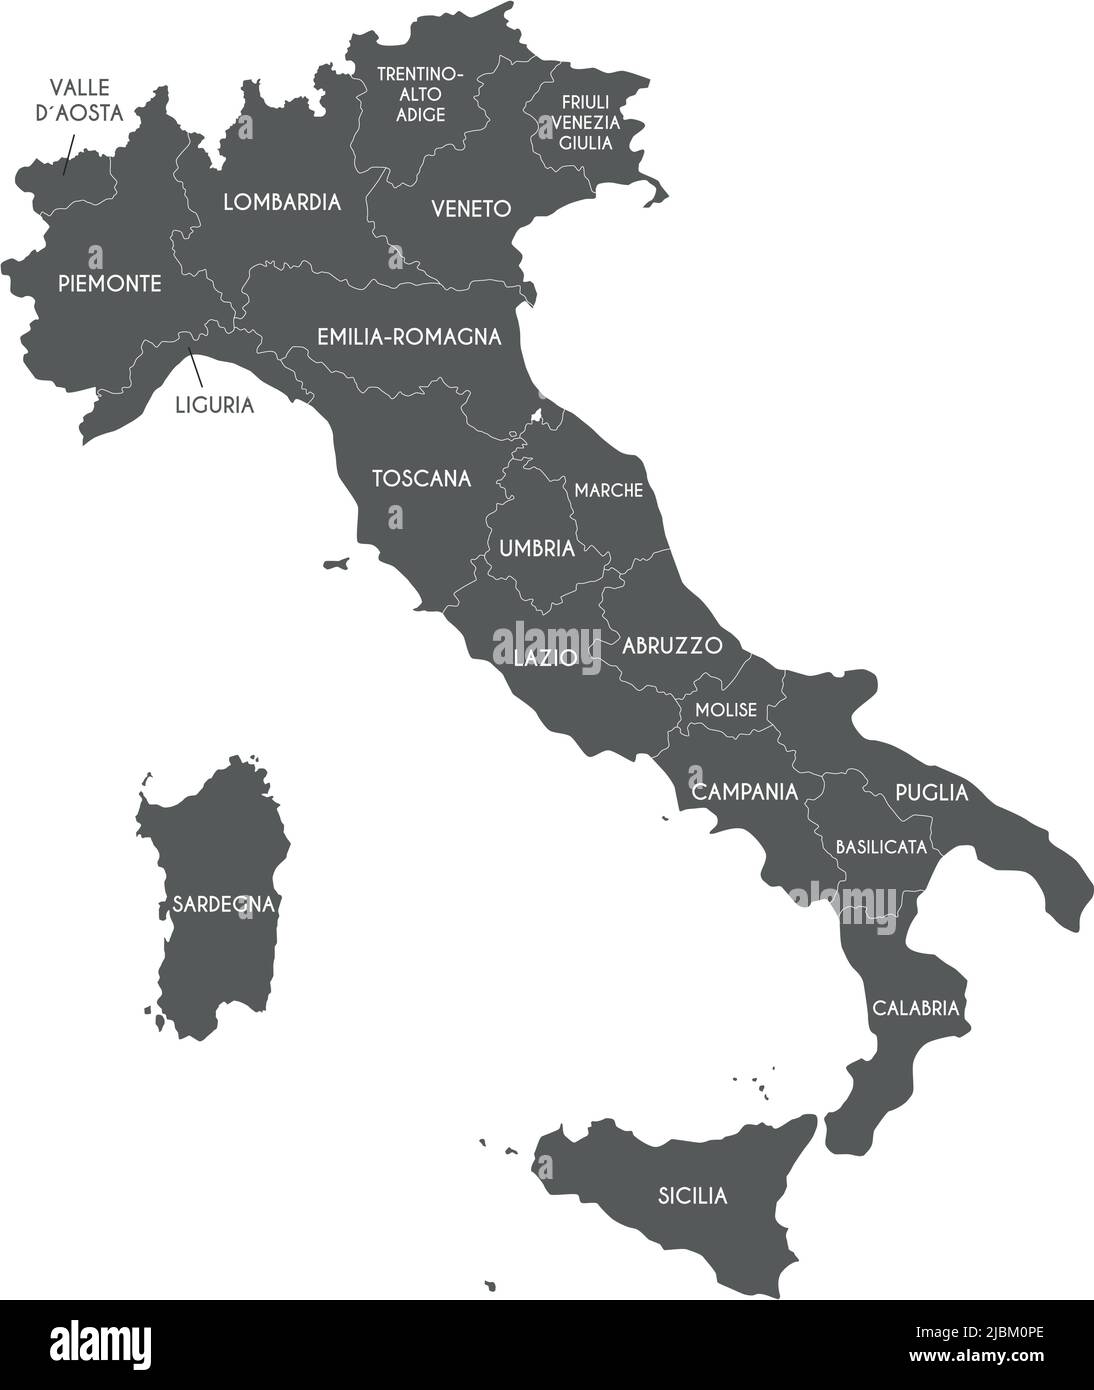 Mappa vettoriale dell'Italia con regioni e divisioni amministrative. Livelli modificabili e chiaramente etichettati. Illustrazione Vettoriale